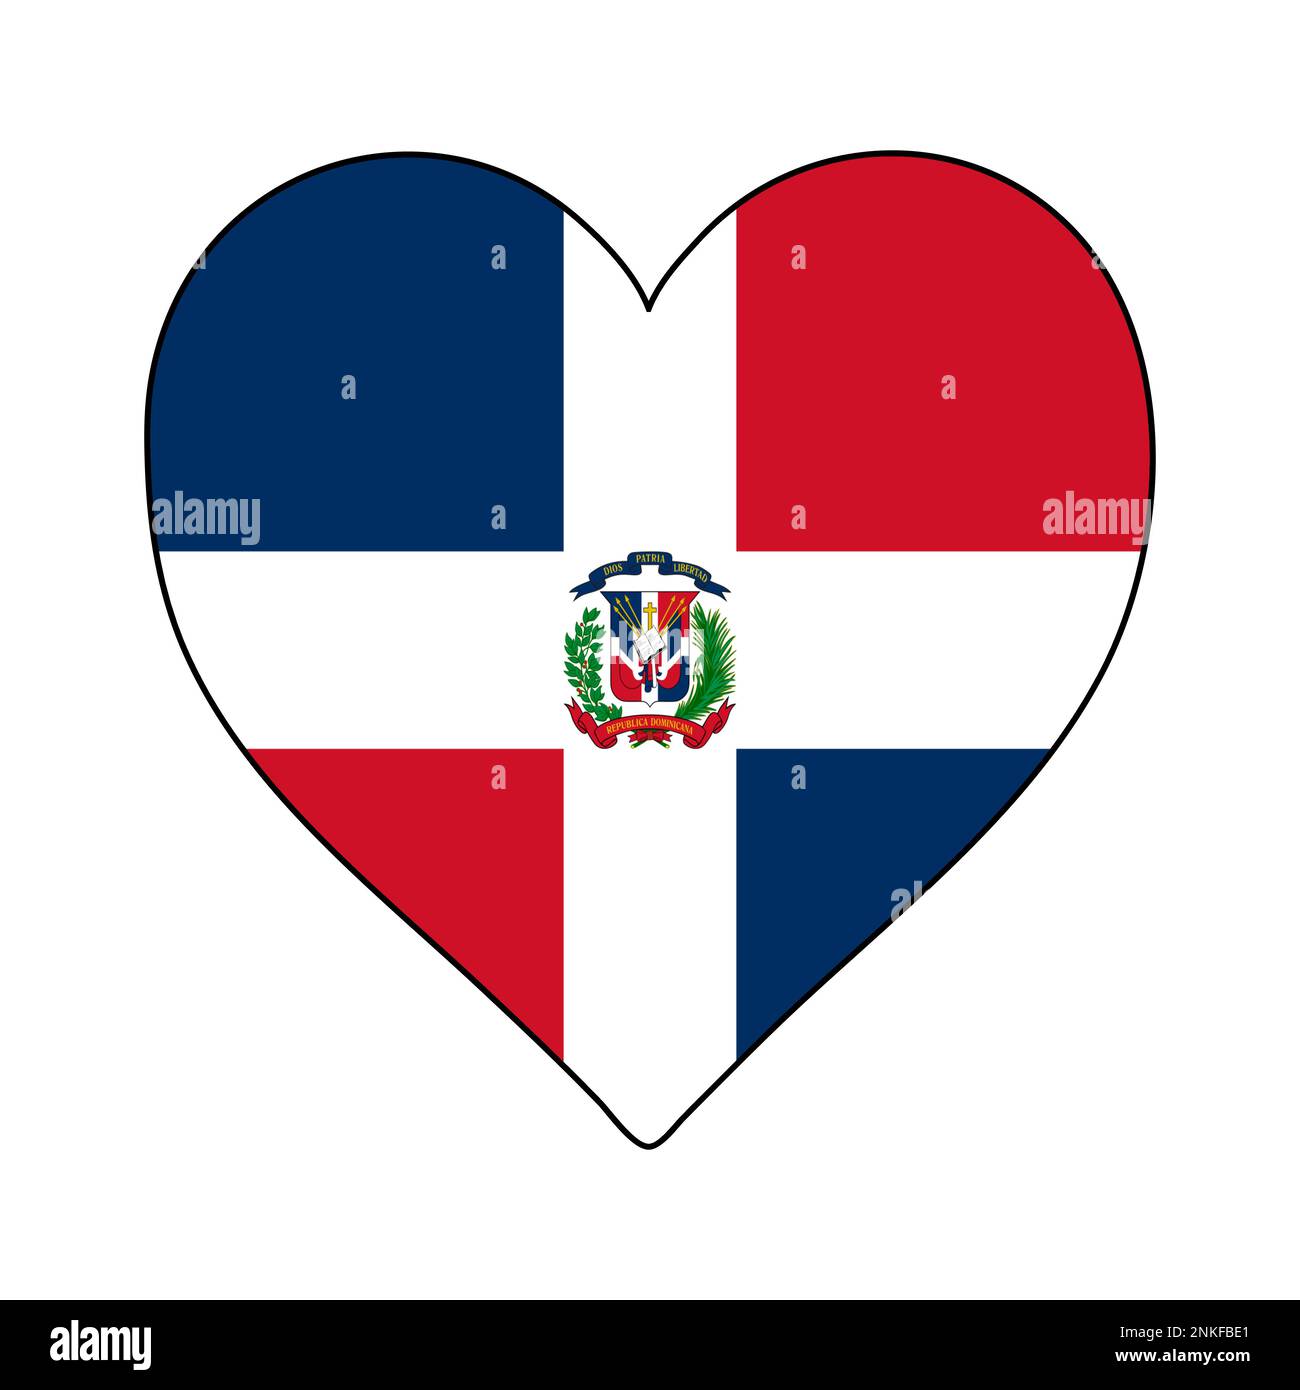 Repubblica Dominicana Heart Shape Flag. Ama la Repubblica Dominicana. Visita Repubblica Dominicana. Caraibi. America Latina. Disegno grafico dell'illustrazione vettoriale. Illustrazione Vettoriale